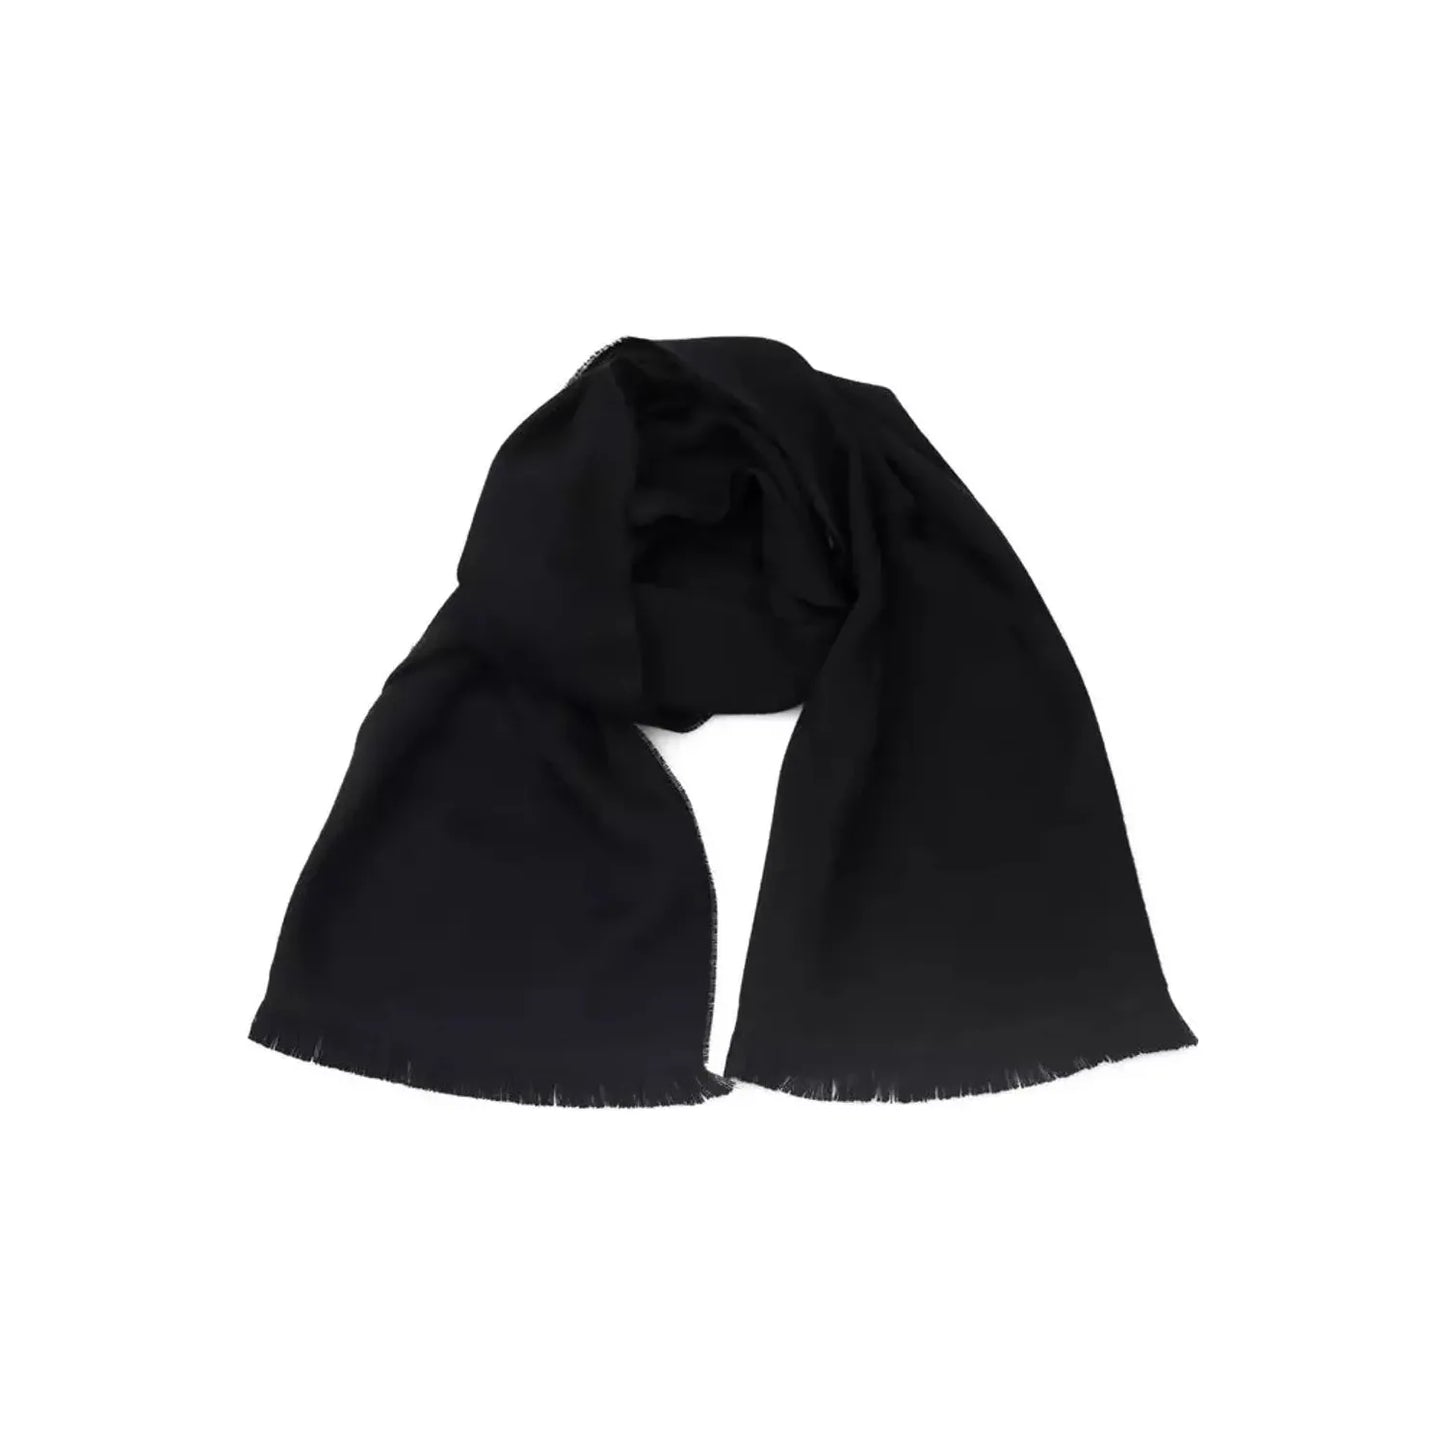 Philipp Plein Elegant Fringed Logo Scarf in Black Wool Wrap Shawl Scarf black-wool-scarf-3